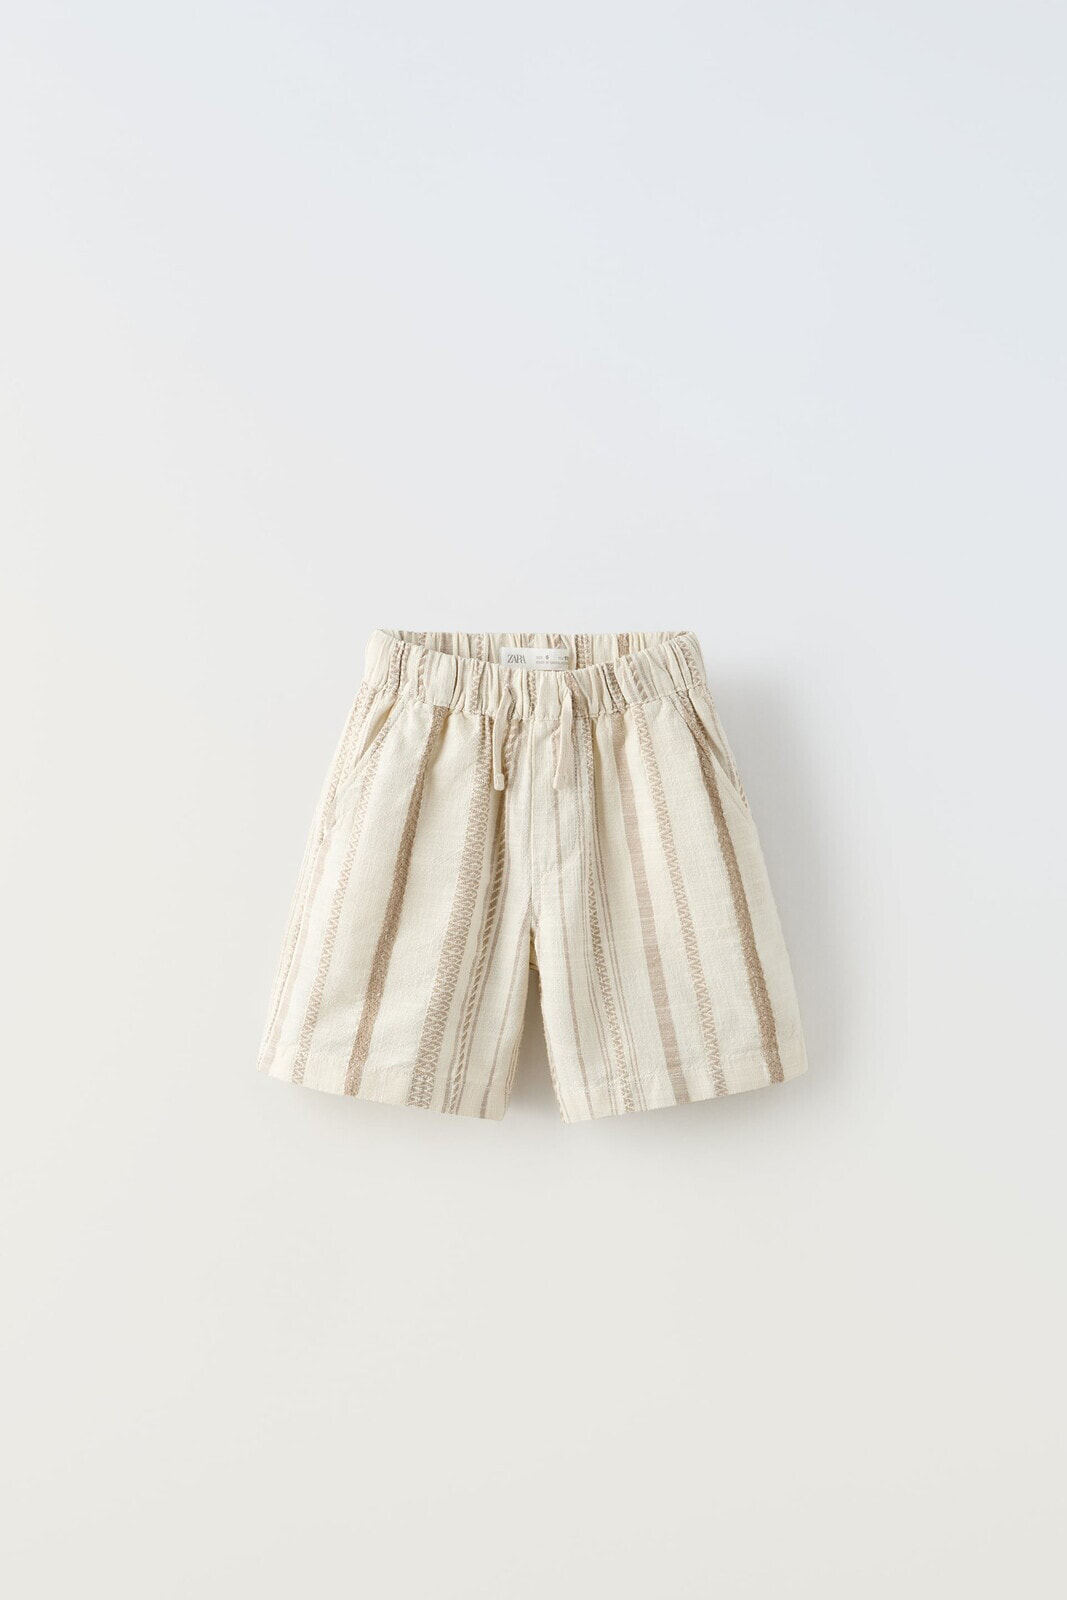 Striped rustic bermuda shorts